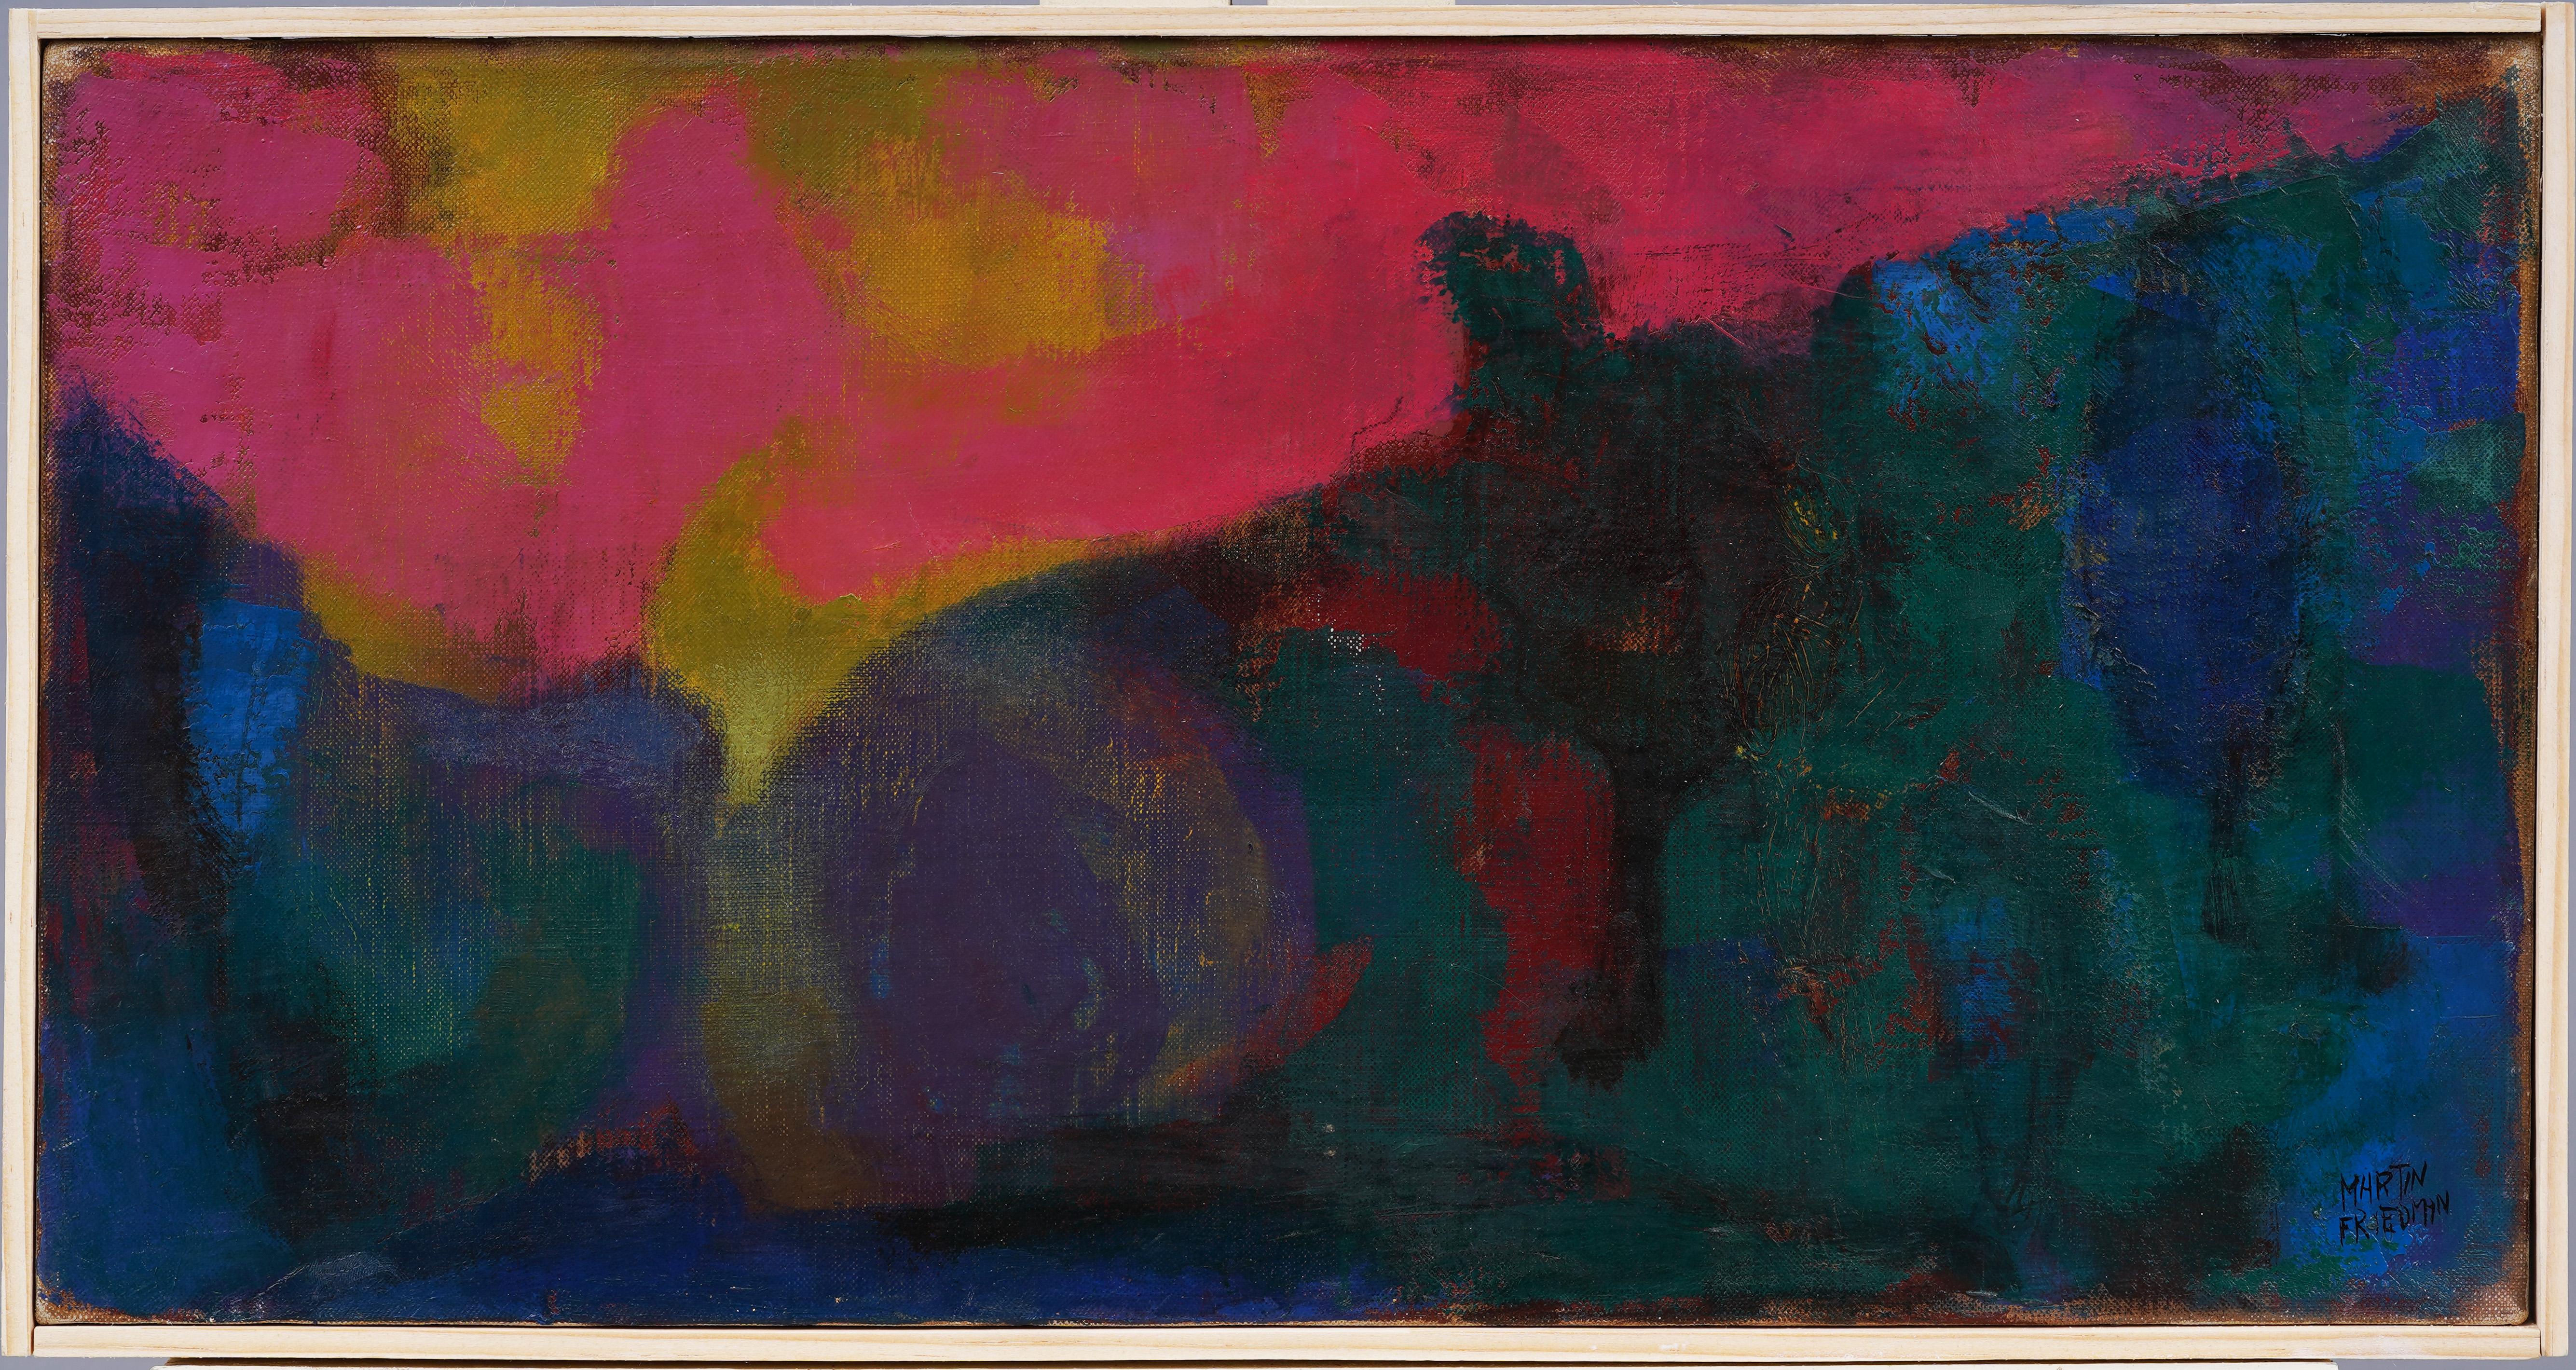 Martin Friedman Abstract Painting – Gerahmtes Ölgemälde der amerikanischen Moderne, Abstrakt-expressionistische Landschaft, Fauvismus